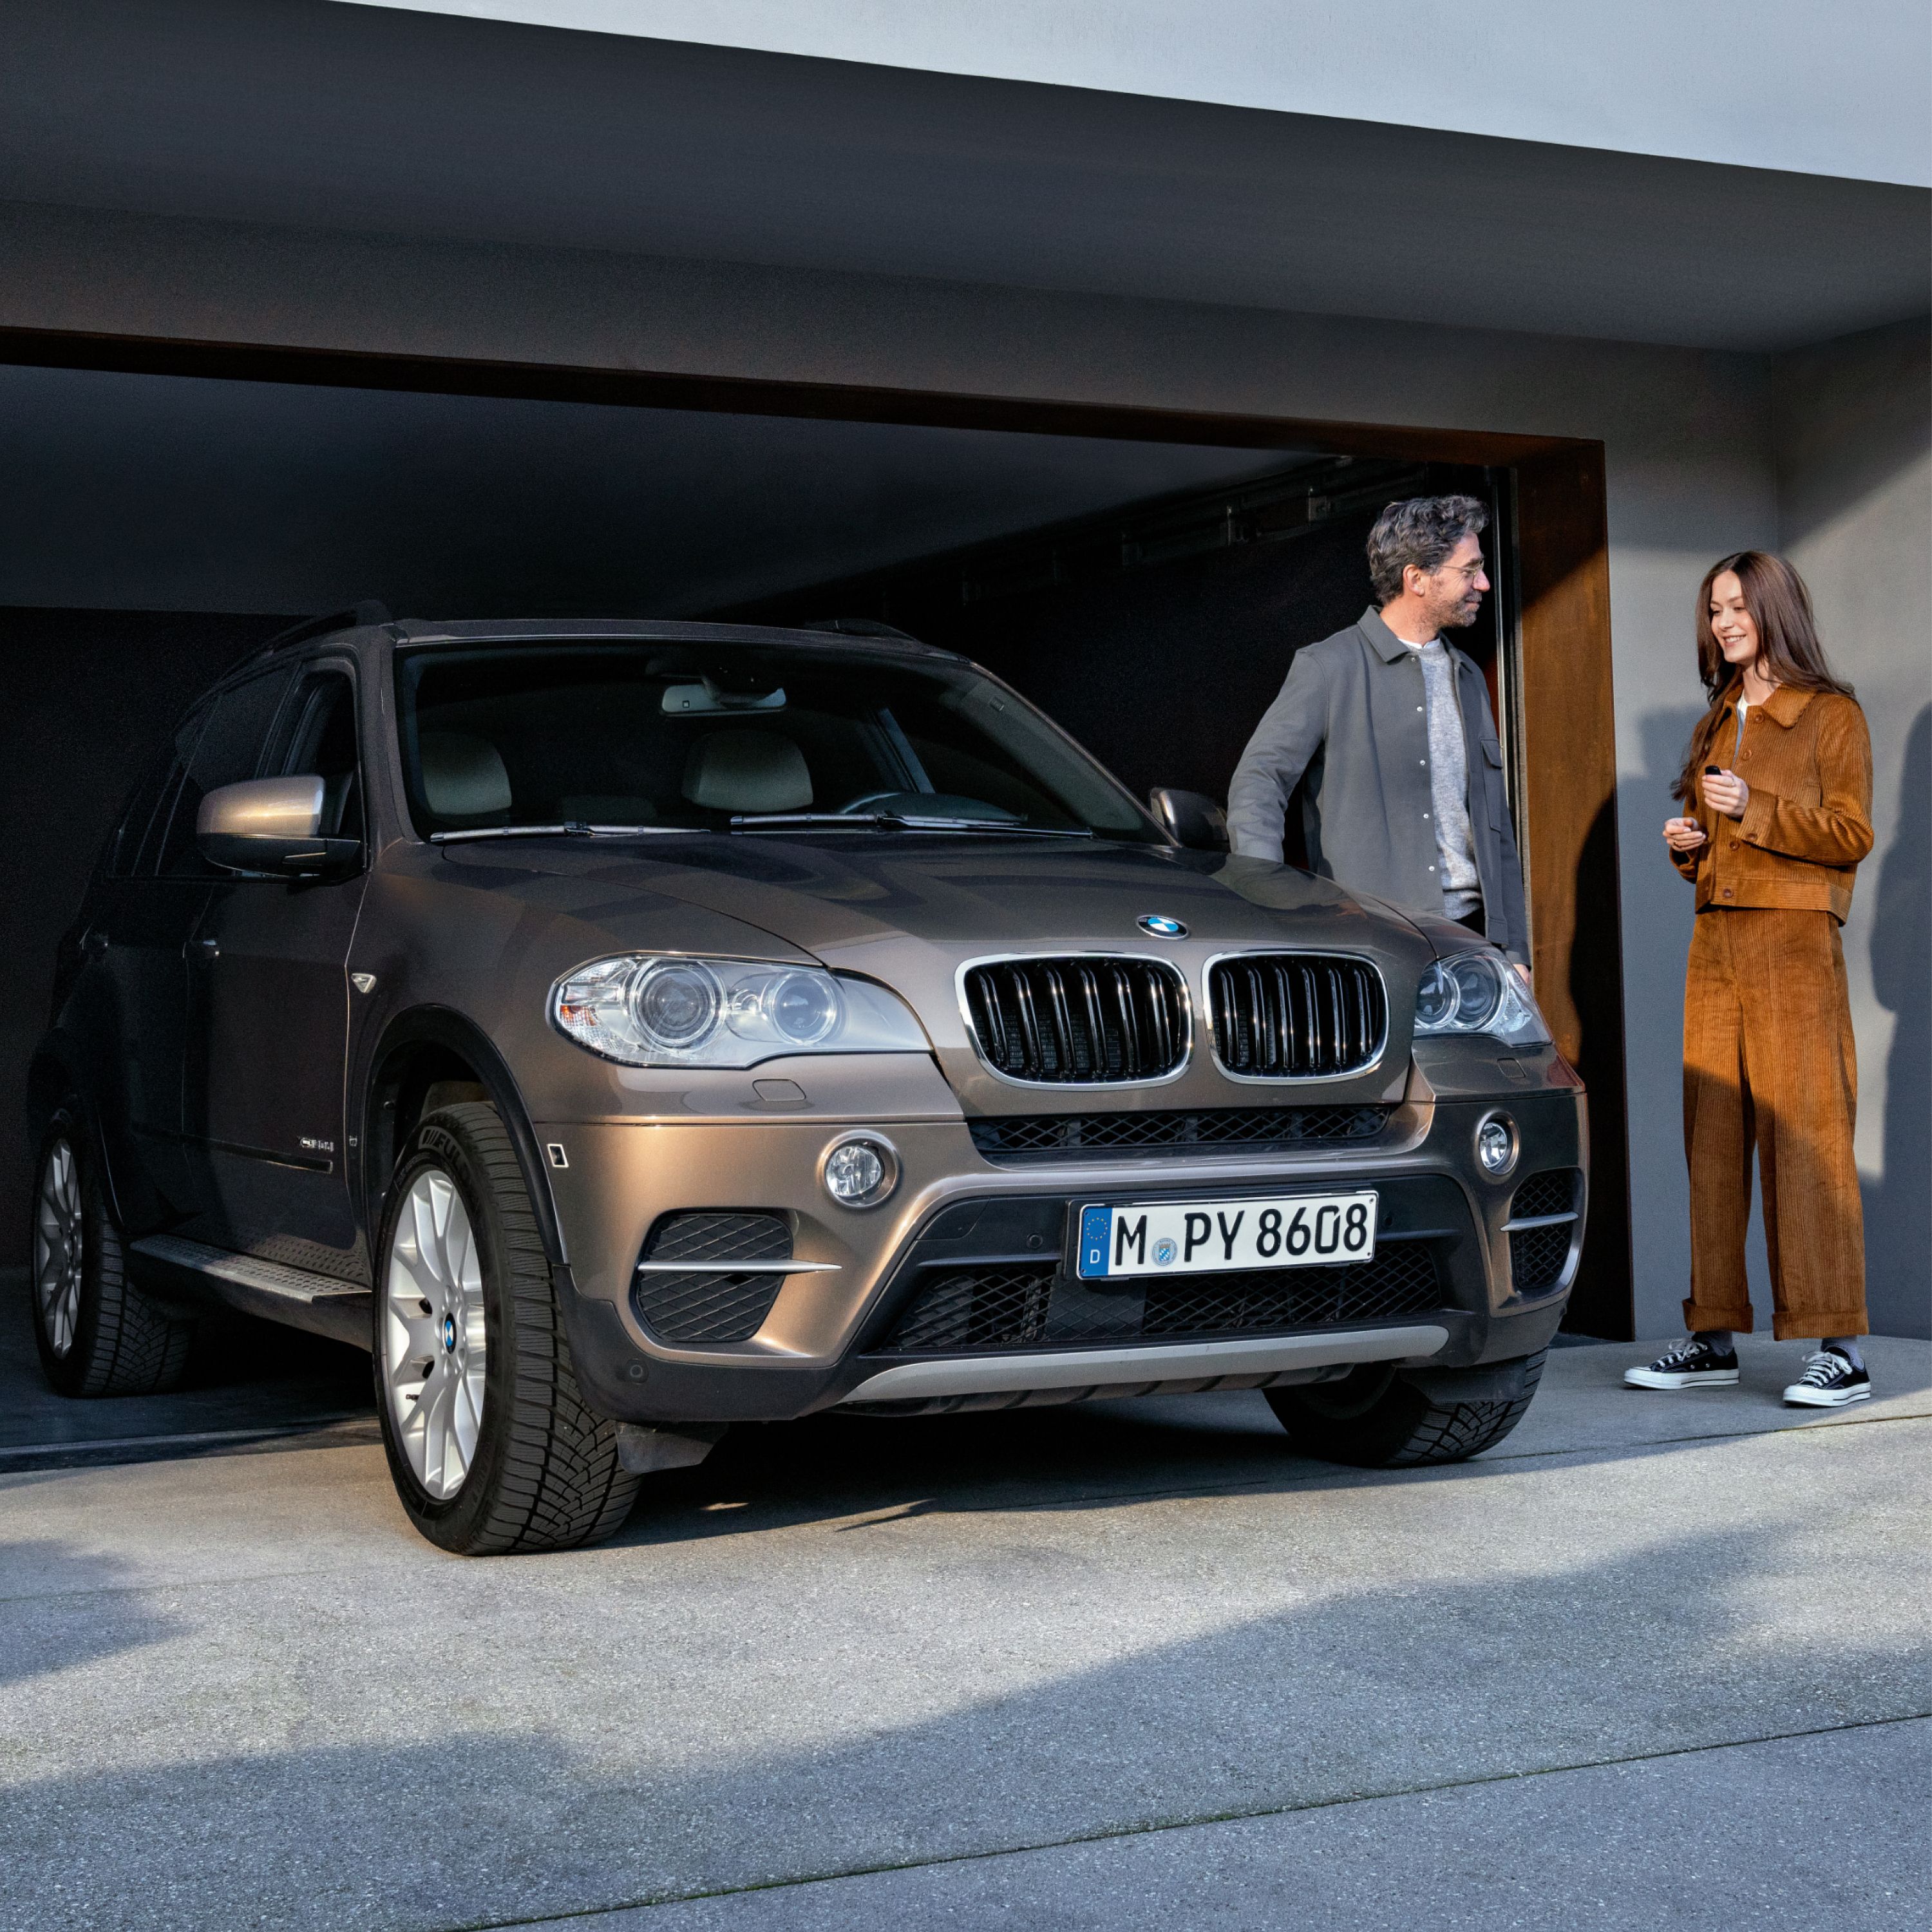 BMW Value Service, BMW μπροστά από γκαράζ με μοντέλα